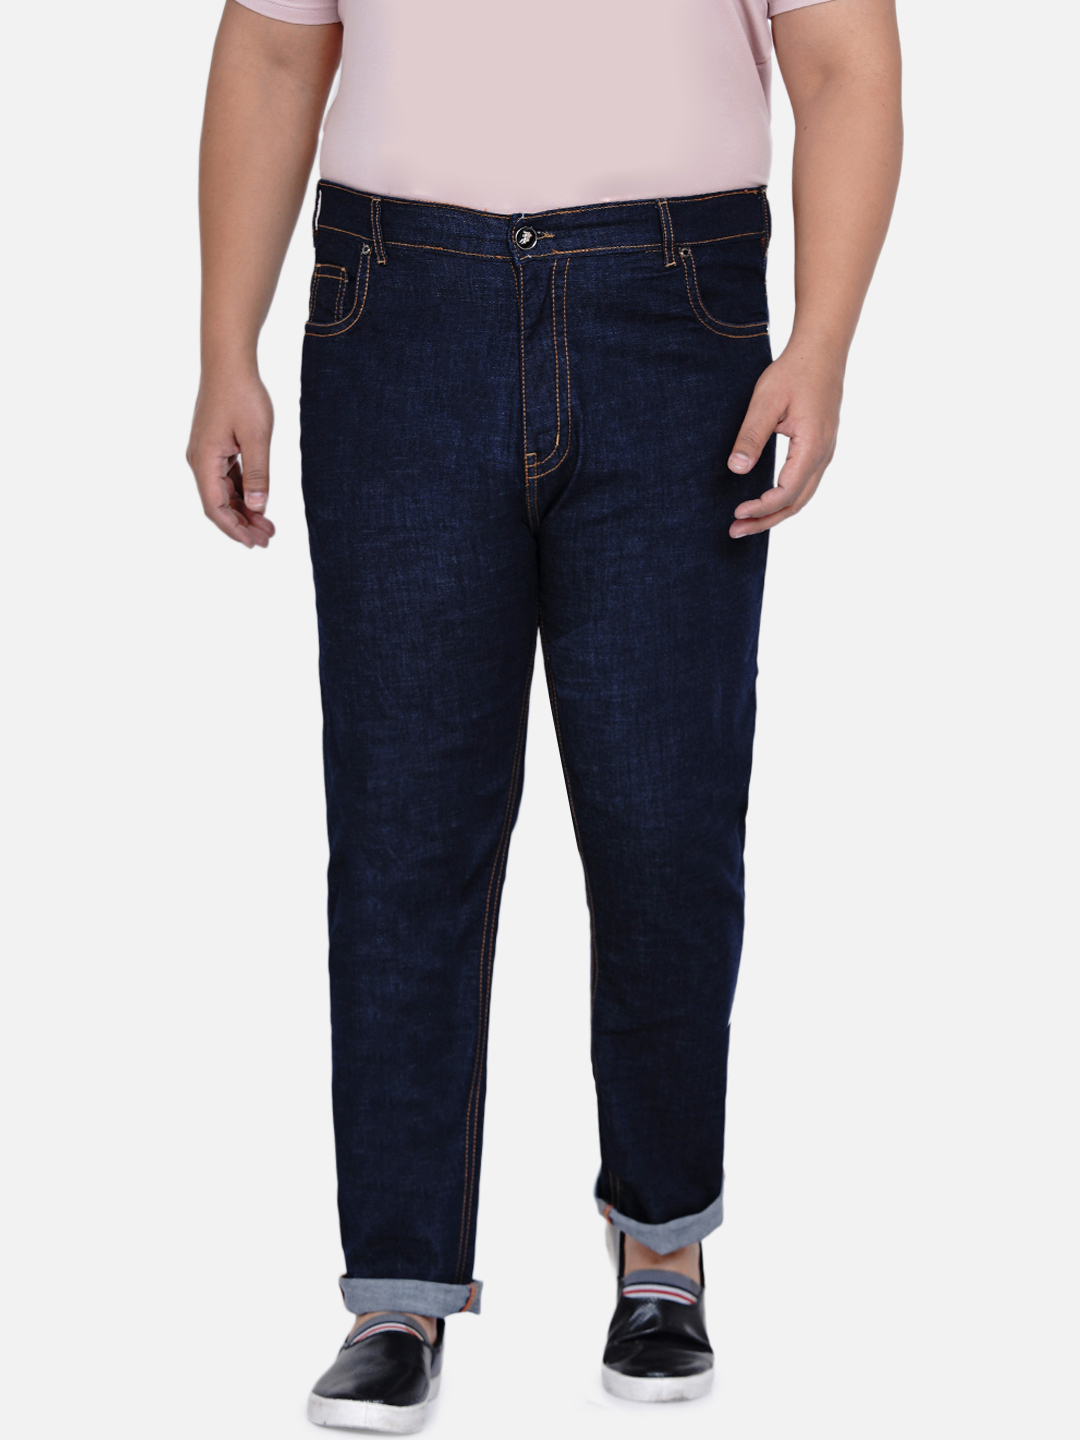 bottomwear/jeans/JPJ6035/jpj6035-3.jpg